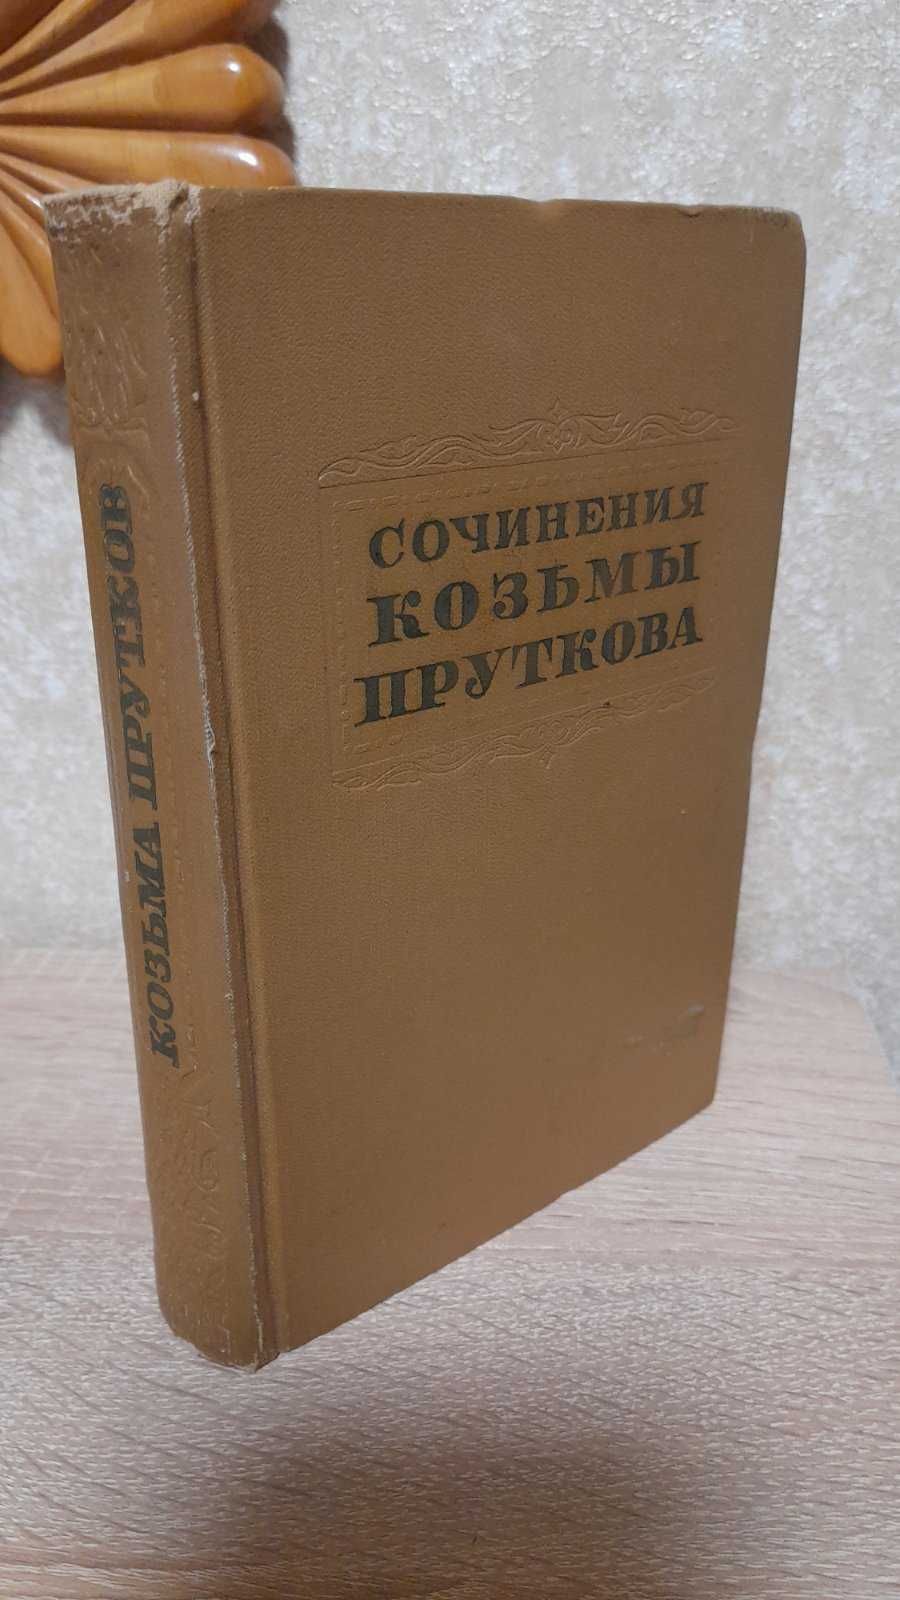 Сочинения Козьмы Пруткова, 1955 г. изд.